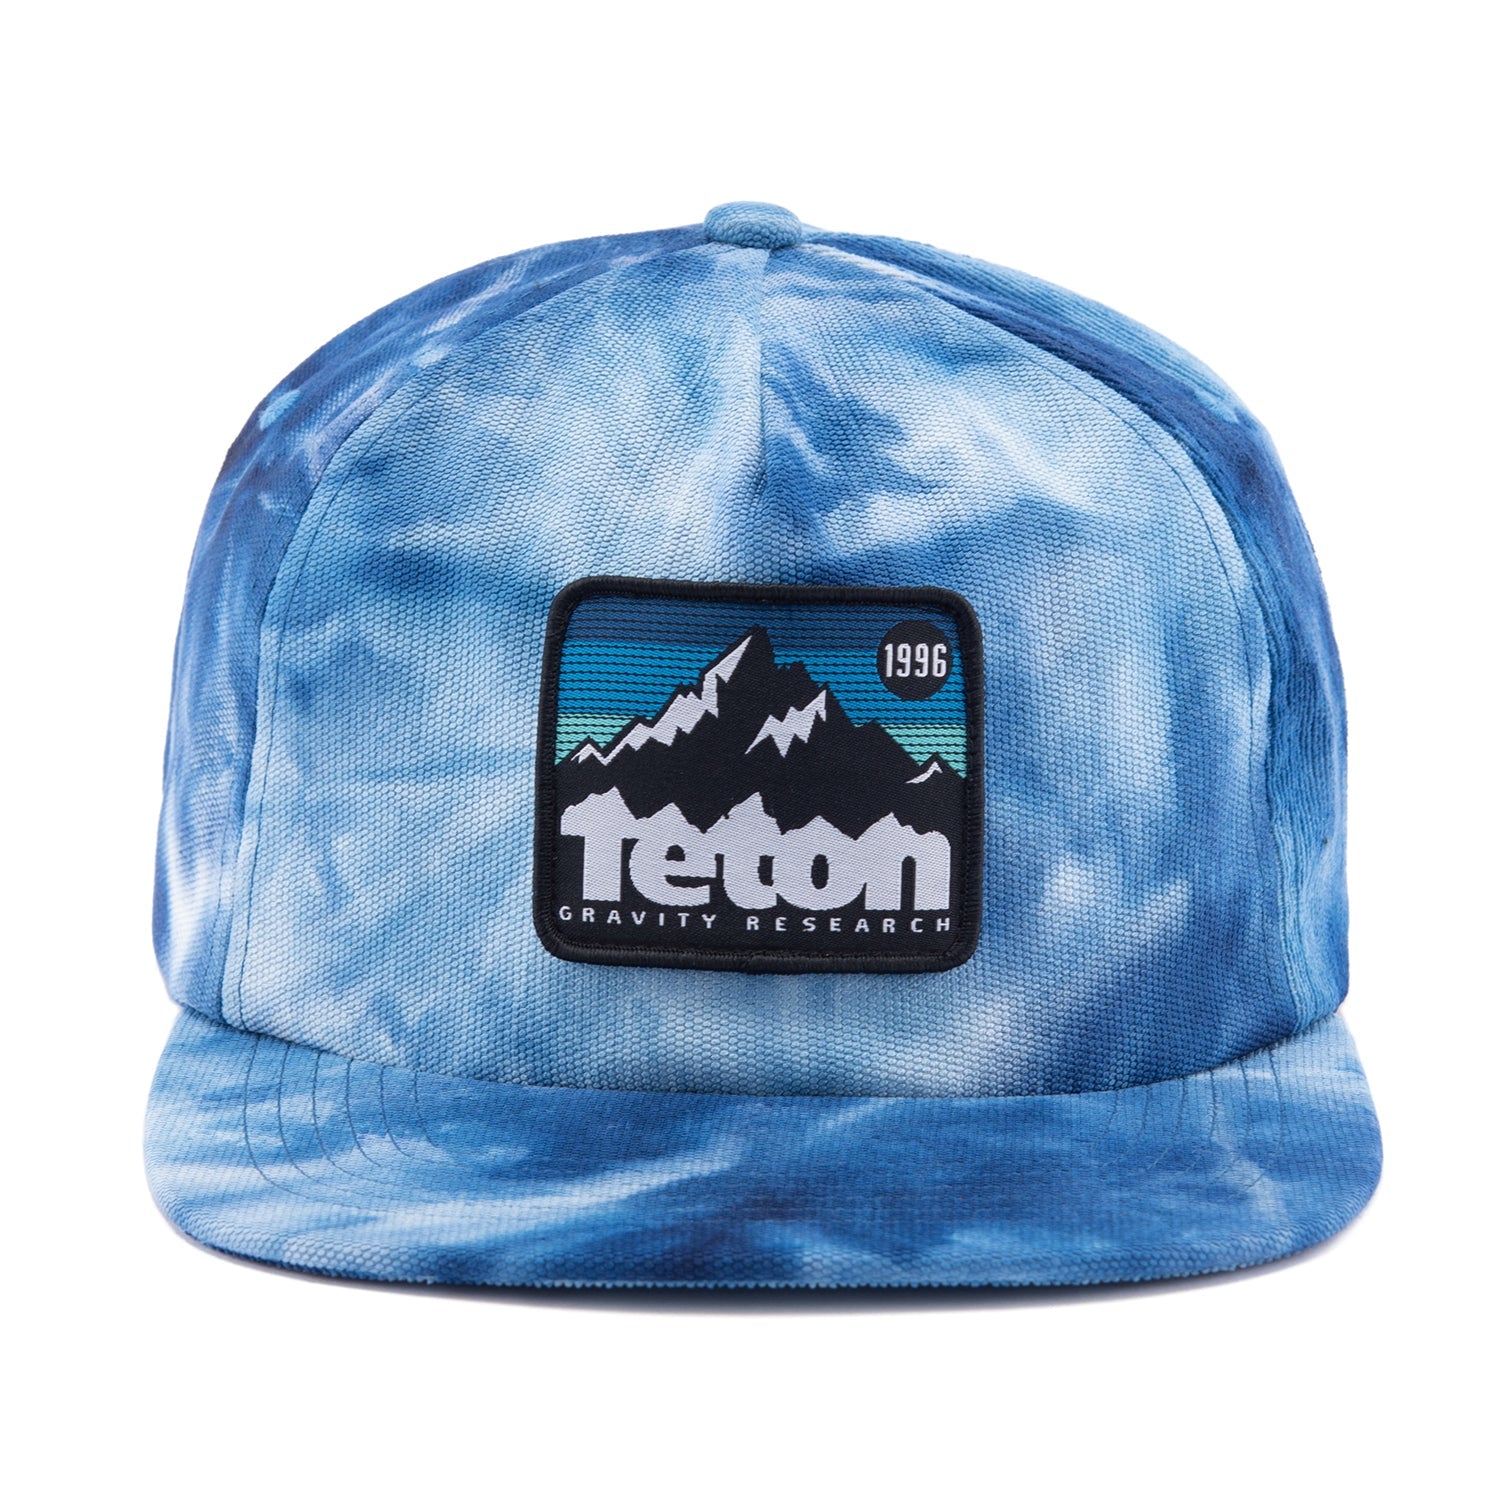 Tie Dye Corduroy '96 Badge Hat - Teton Gravity Research